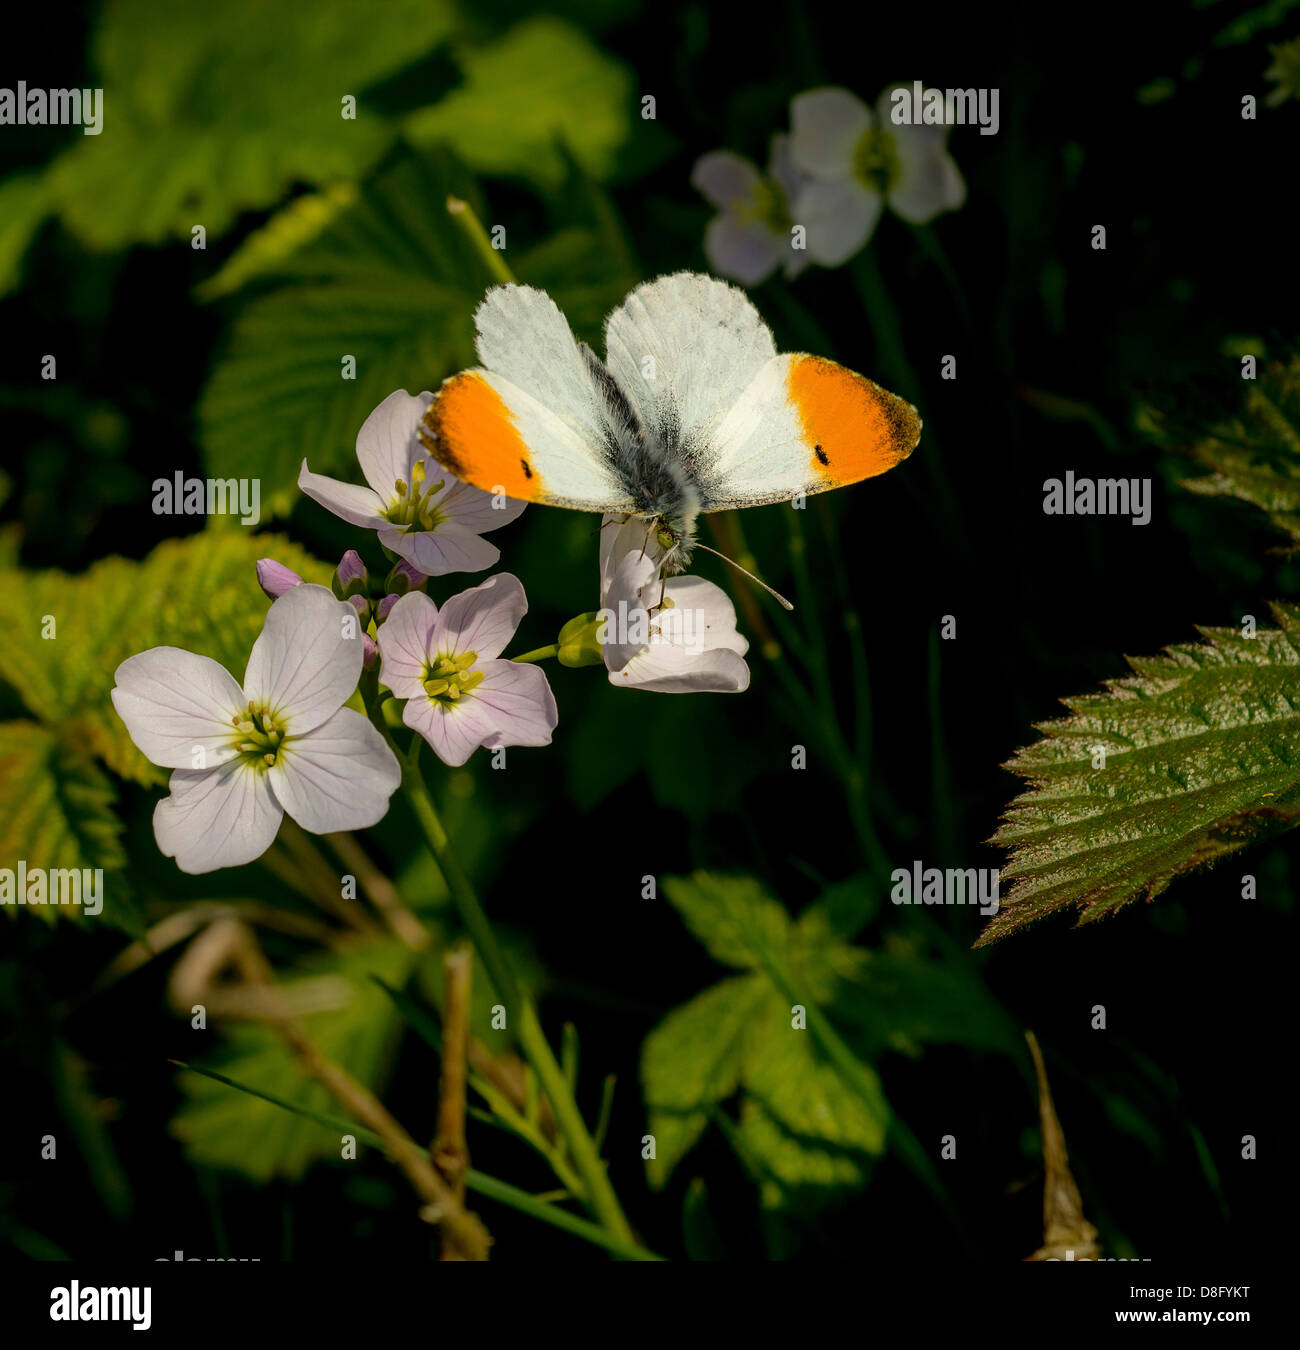 Pequeña mariposa nativa Britanica la punta anaranjada a comienzos del verano. Foto de stock